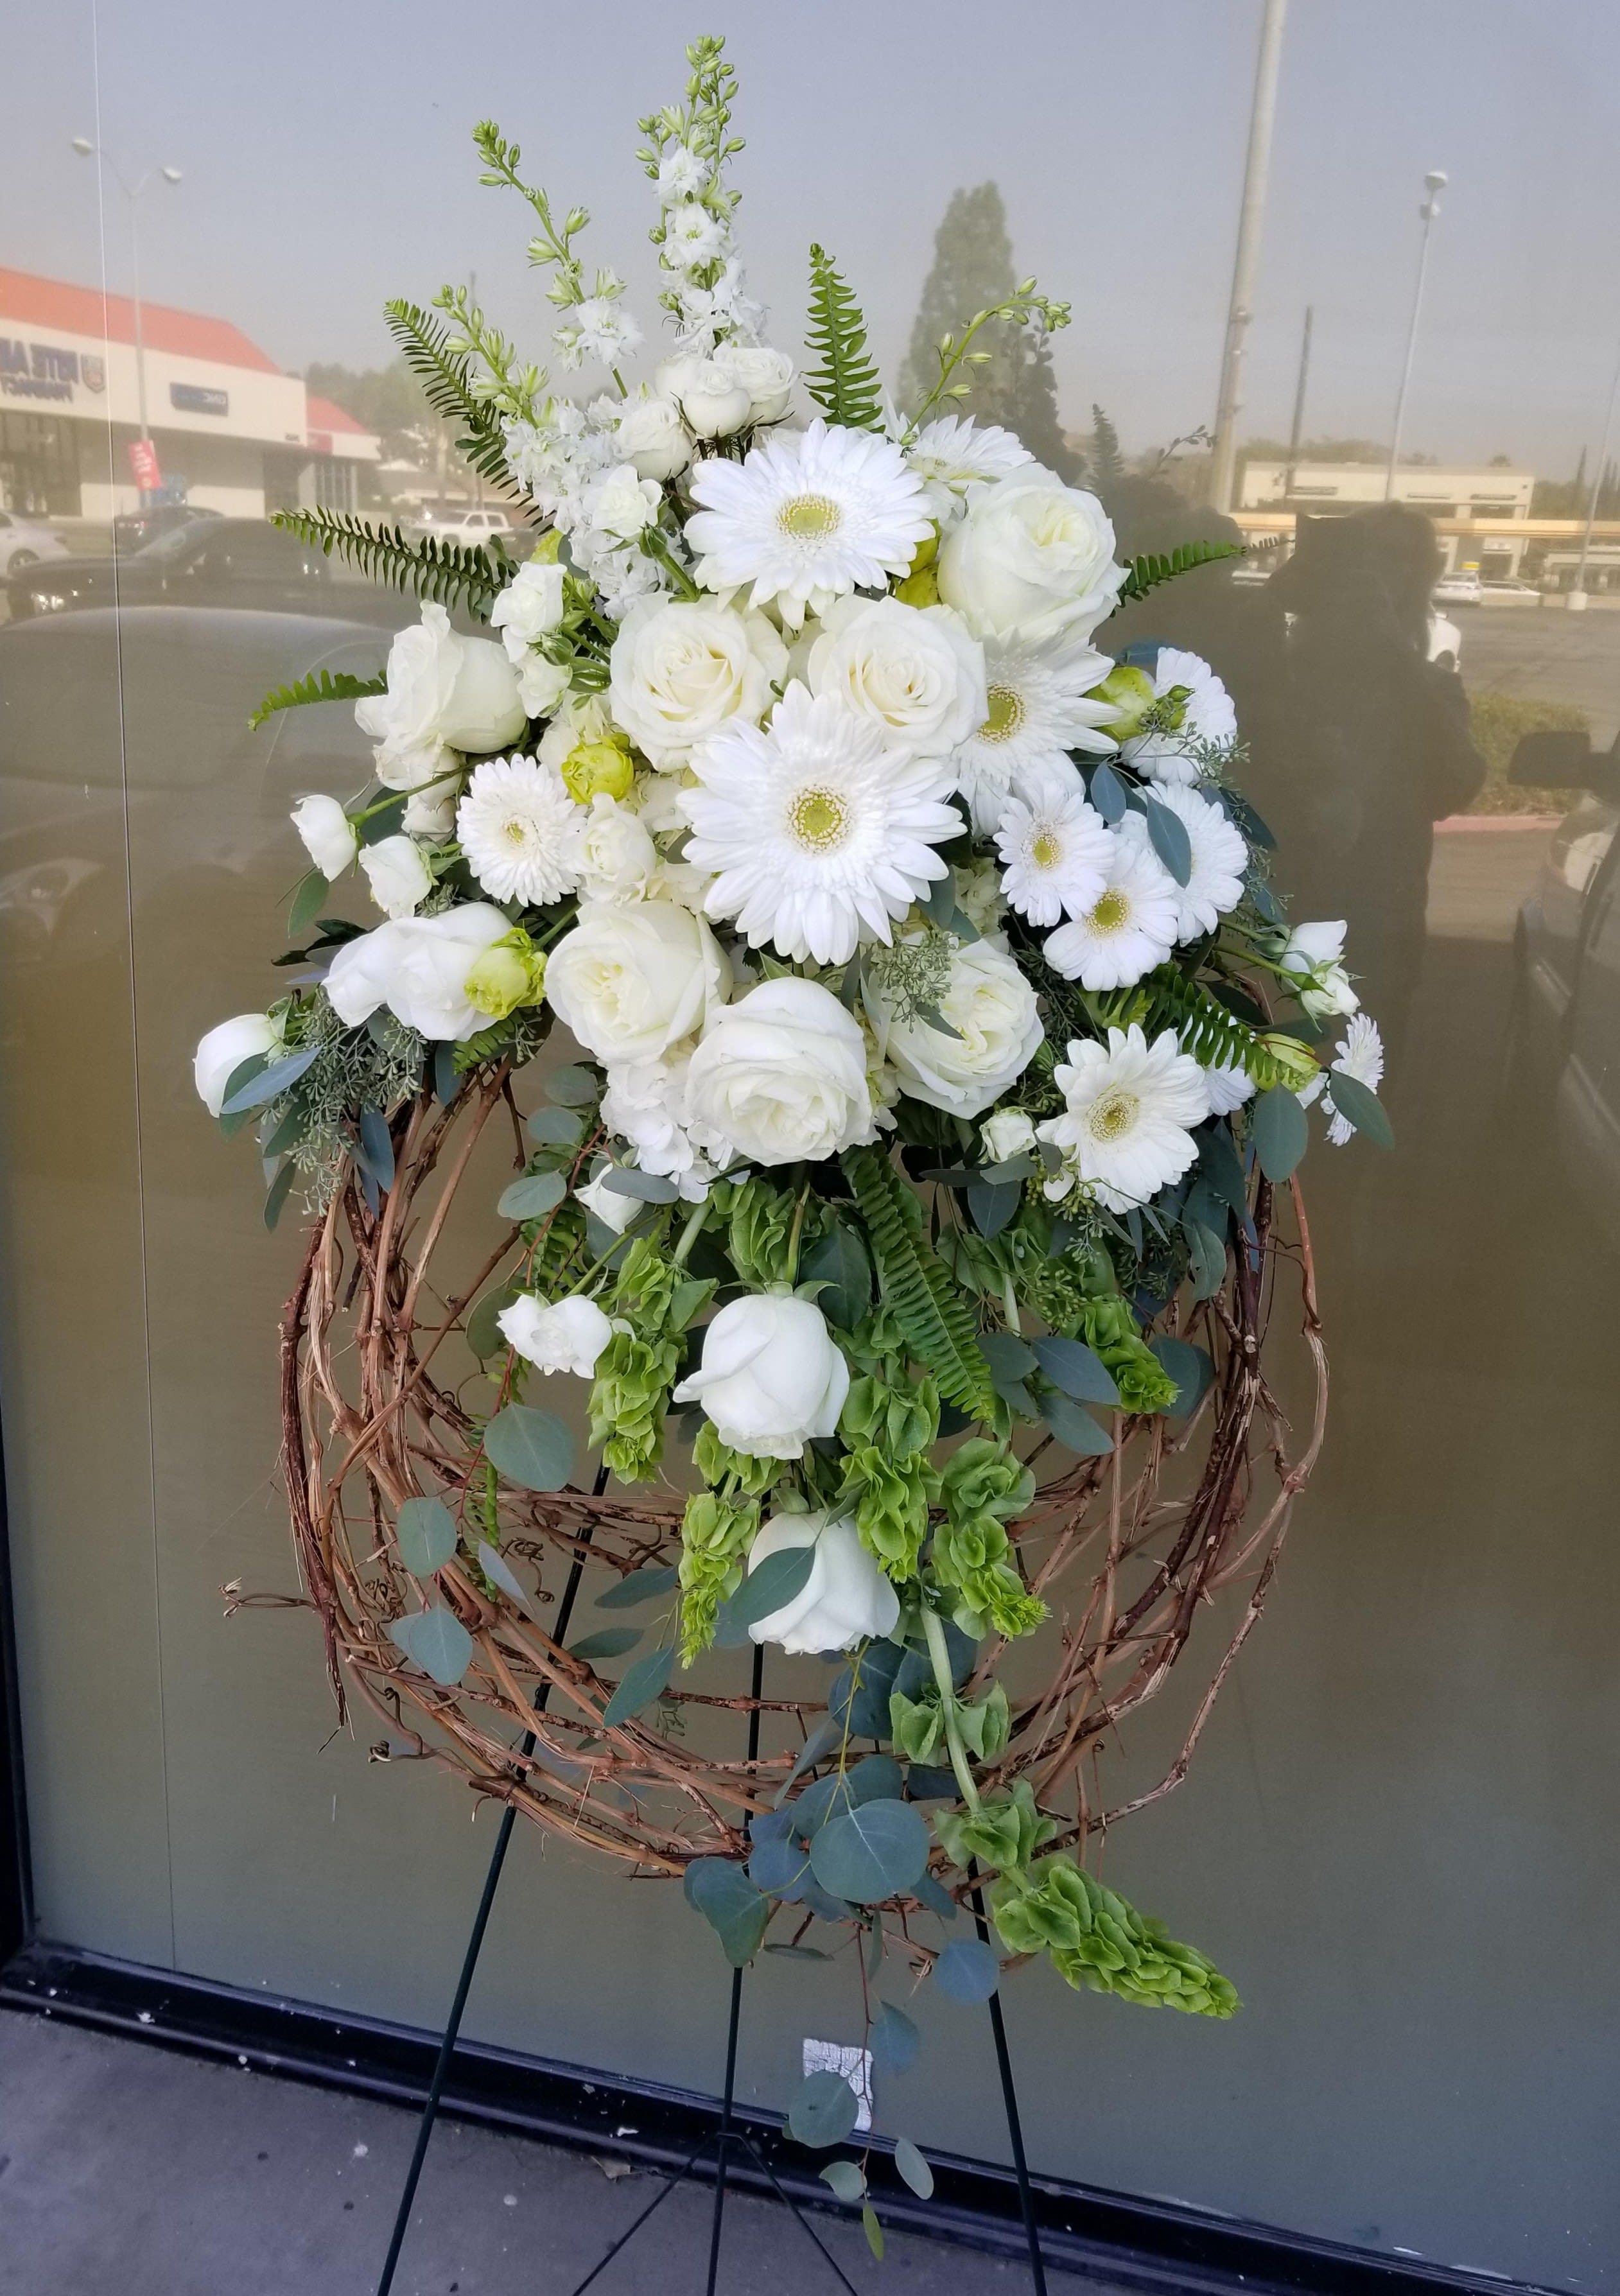 All White Wreath in Westlake Village, CA